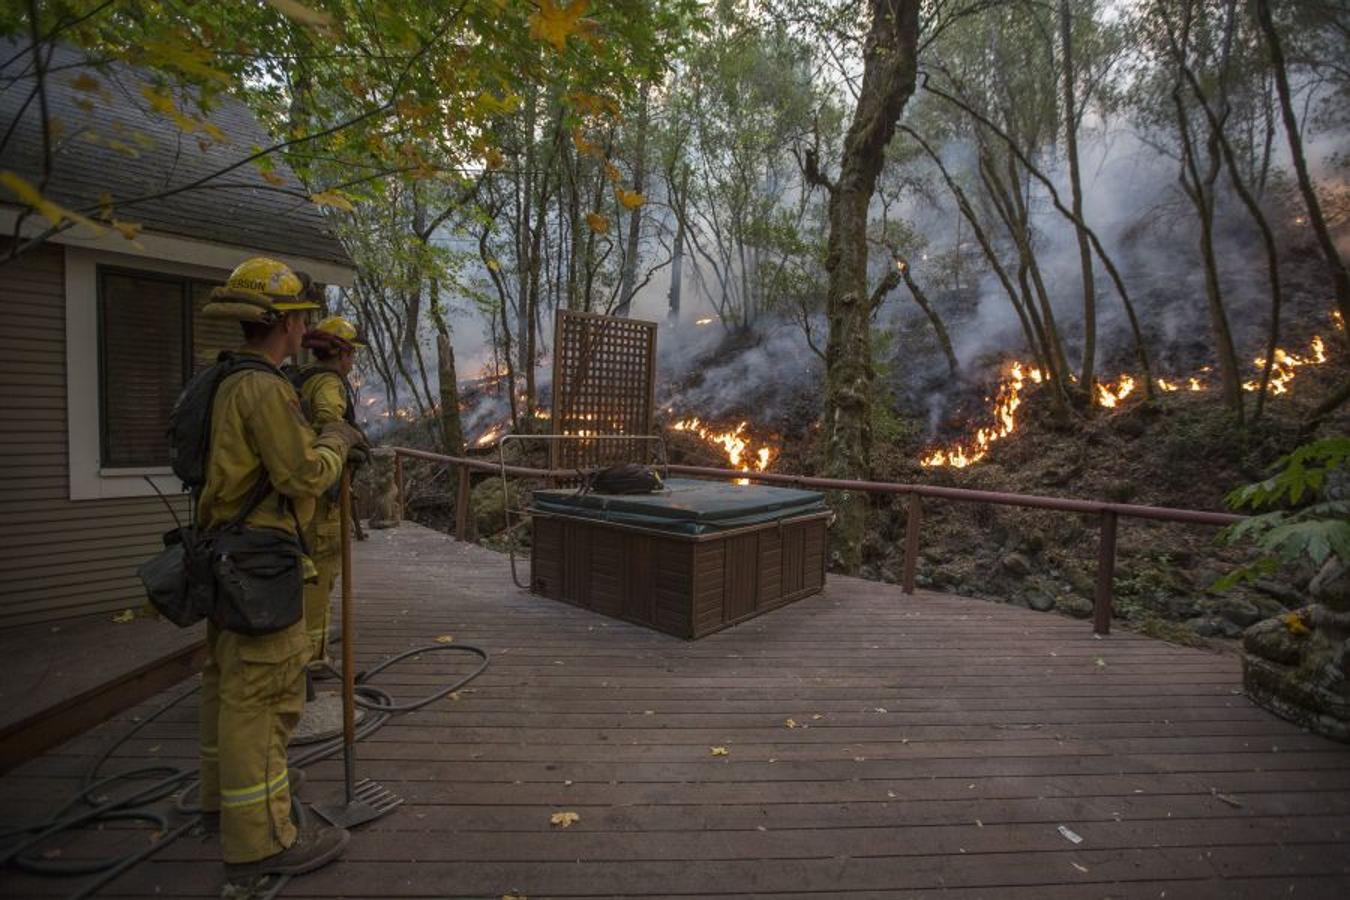 Al menos 40 personas han muerto, muchas siguen desparecidas y alrededor de 5.700 edificios han sido destruidos desde que hace una semana los incendios comenzasen a arrasar California. 